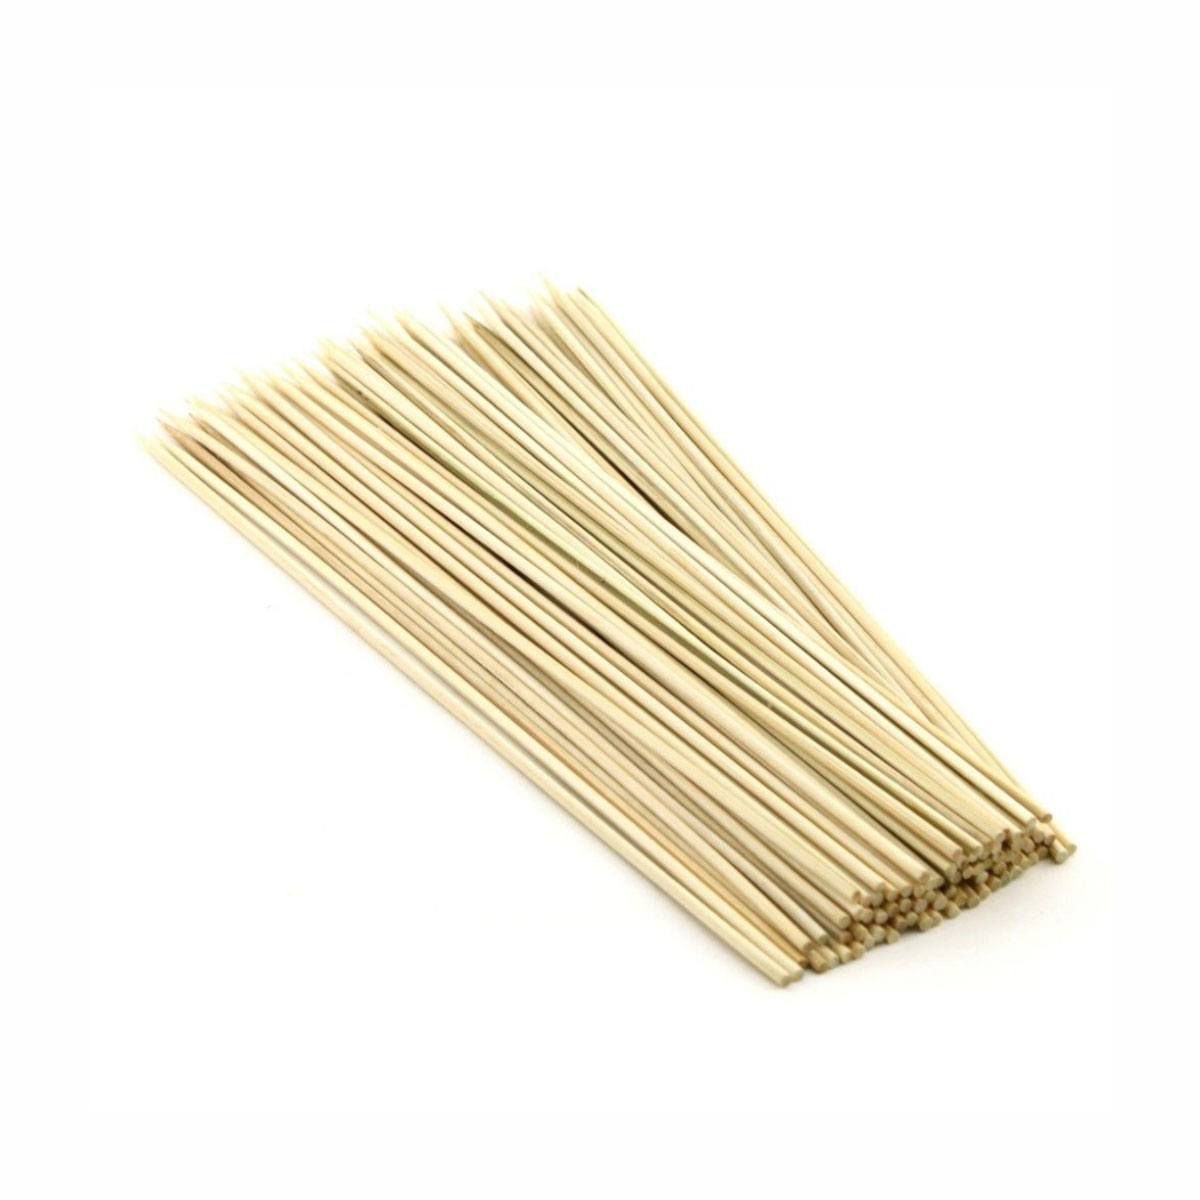 Espetos Bambu (de 18cm, 25cm e 30cm) - Braplas Embalagens